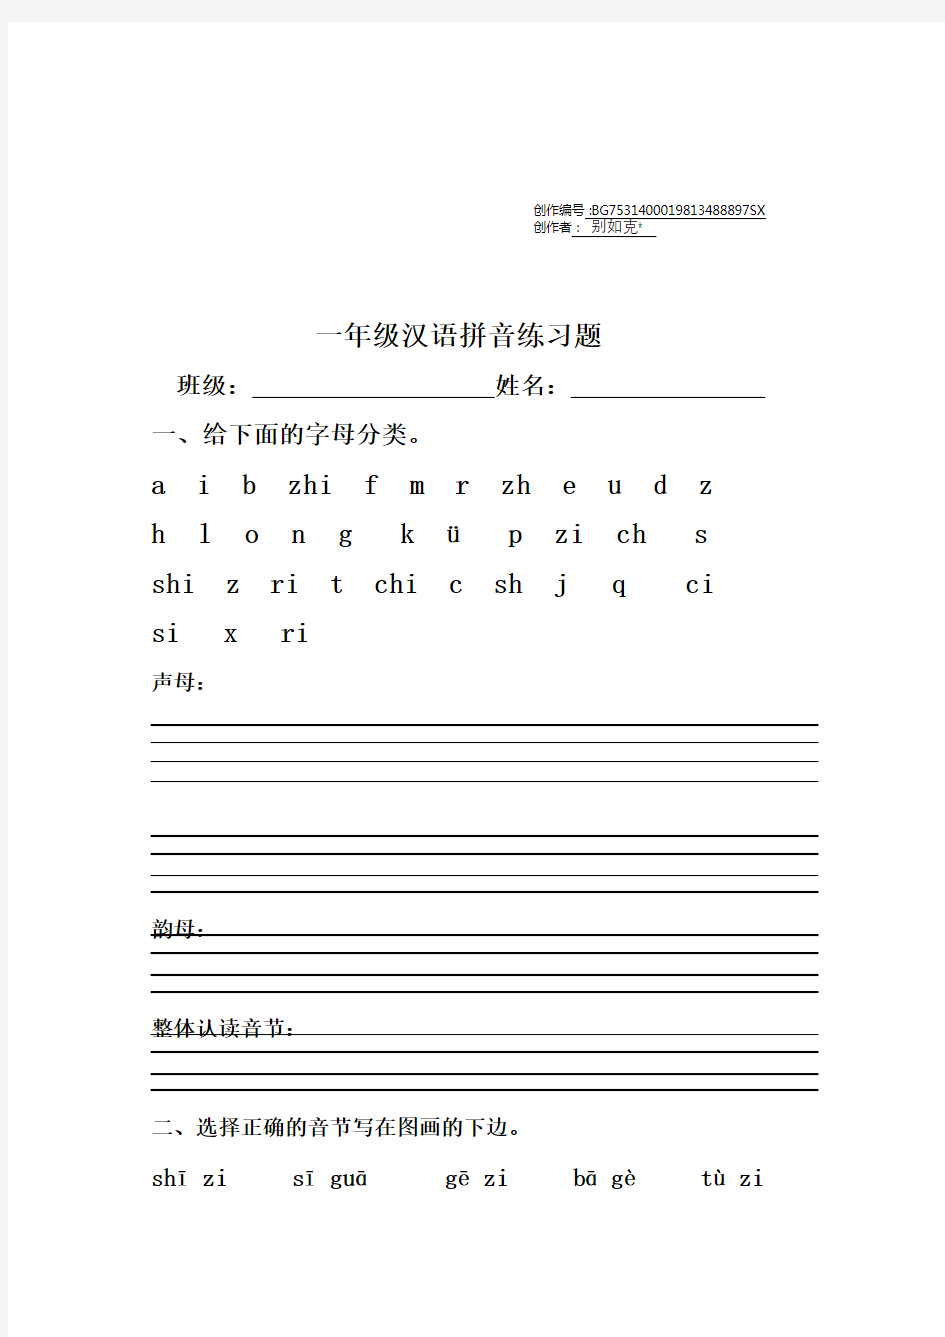 一年级汉语拼音练习题(声母、单韵母)